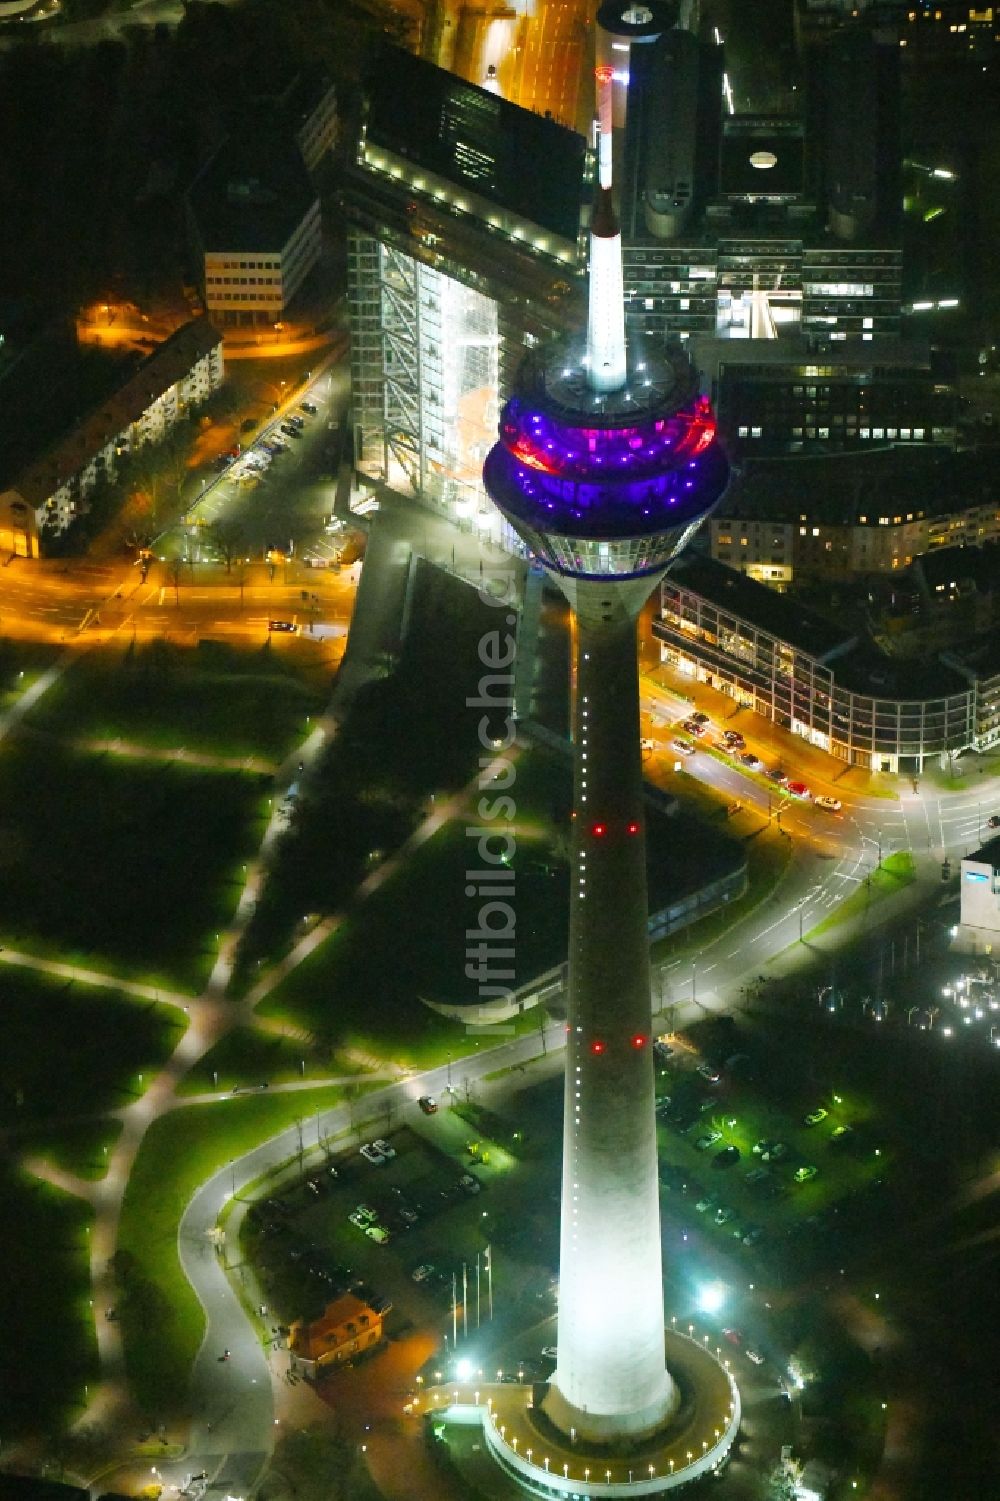 Nacht-Luftaufnahme Düsseldorf - Nachtluftbild des Fernsehturm Rheinturm in Düsseldorf im Bundesland Nordrhein-Westfalen